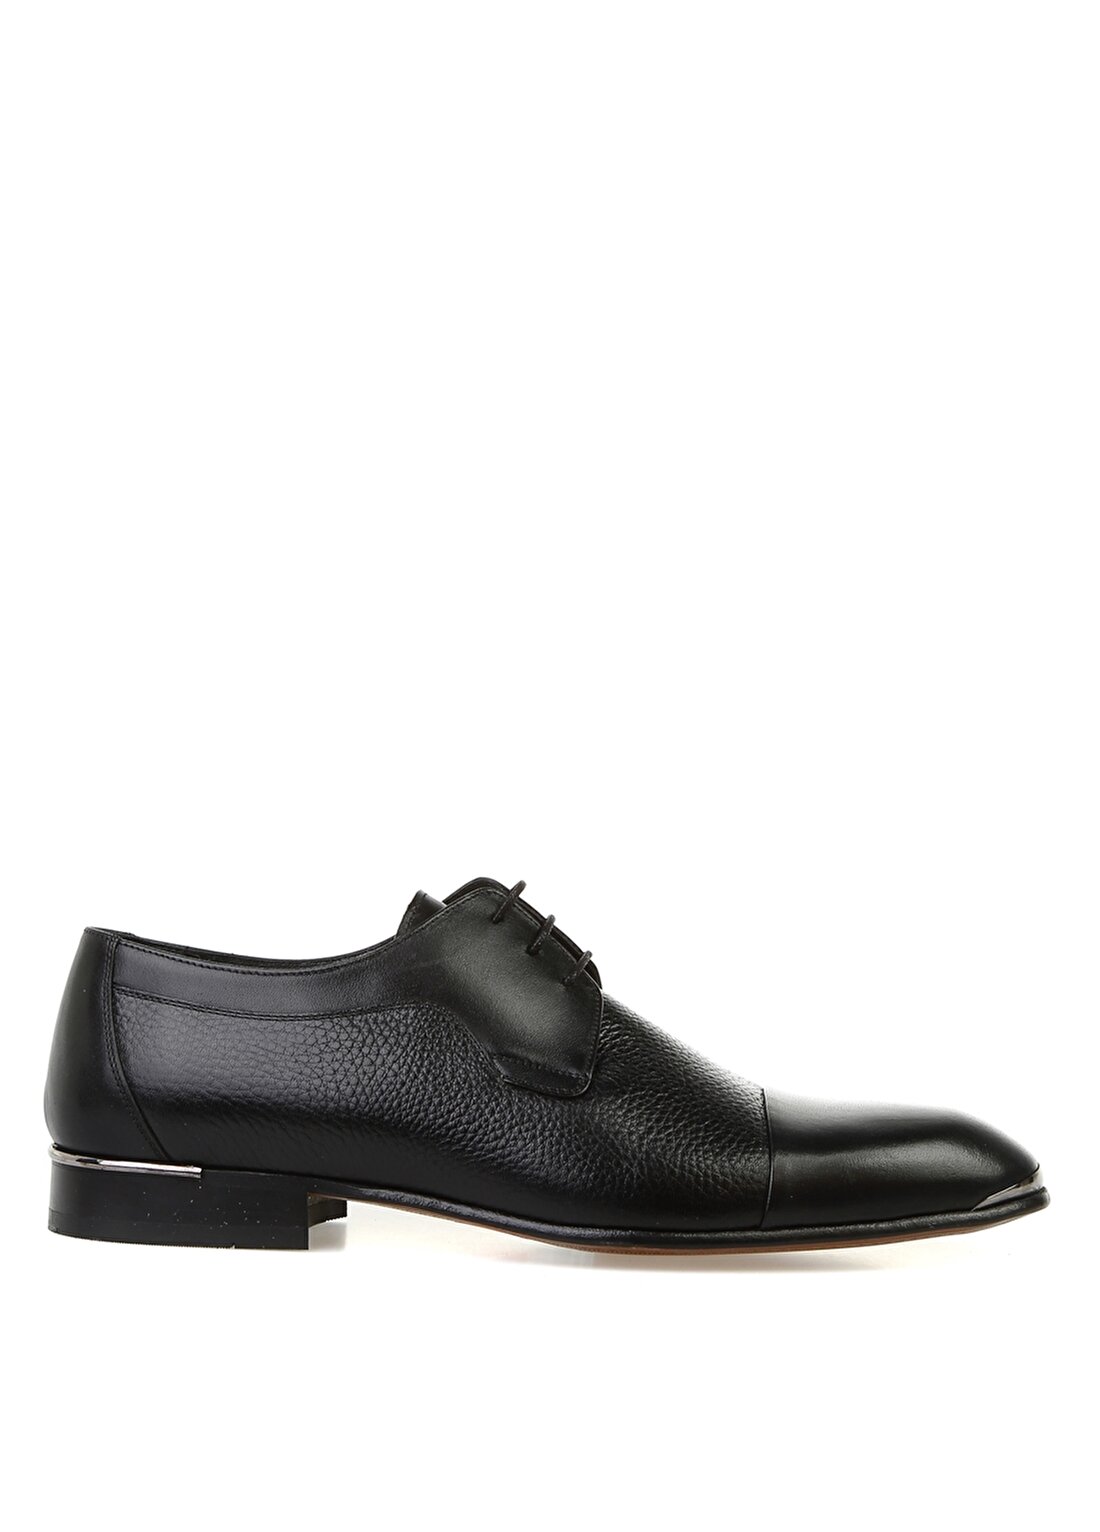 Kemal Tanca Kısa Topuklu Bağcıklı Sivri Uçlu Gümüş Detaylı Siyah Erkek Klasik Ayakkabı